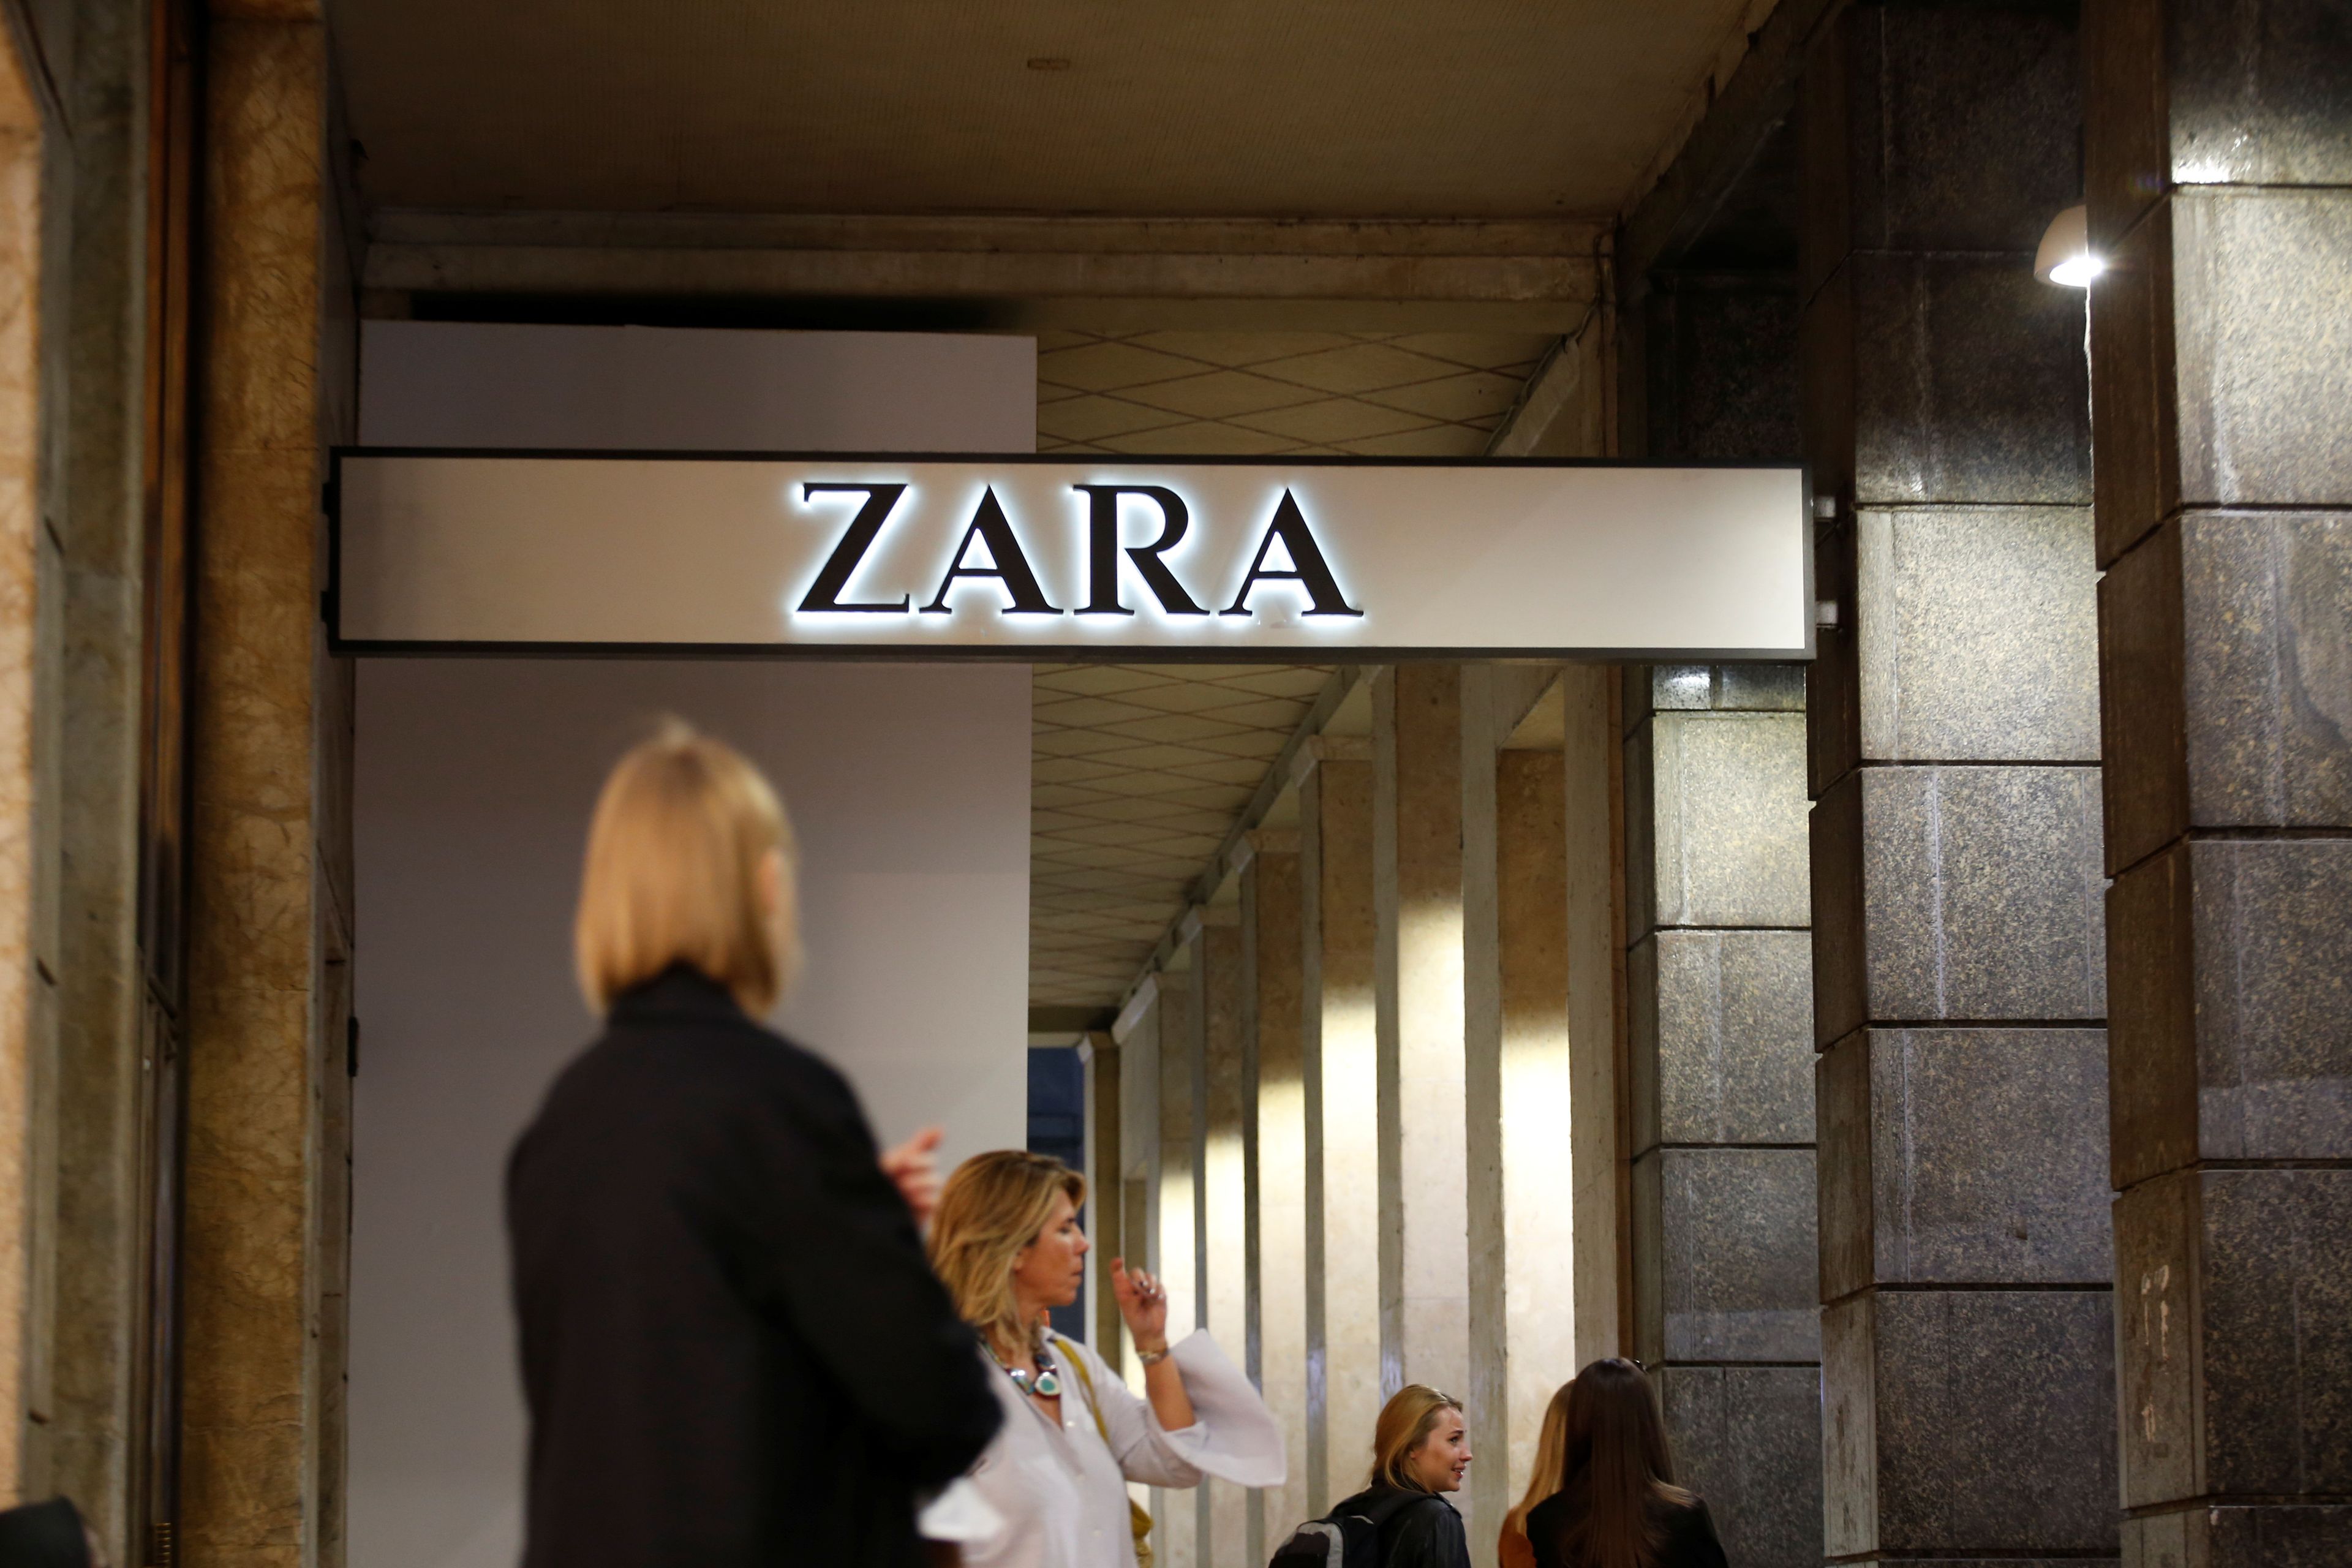 En imagen, una tienda de Zara.